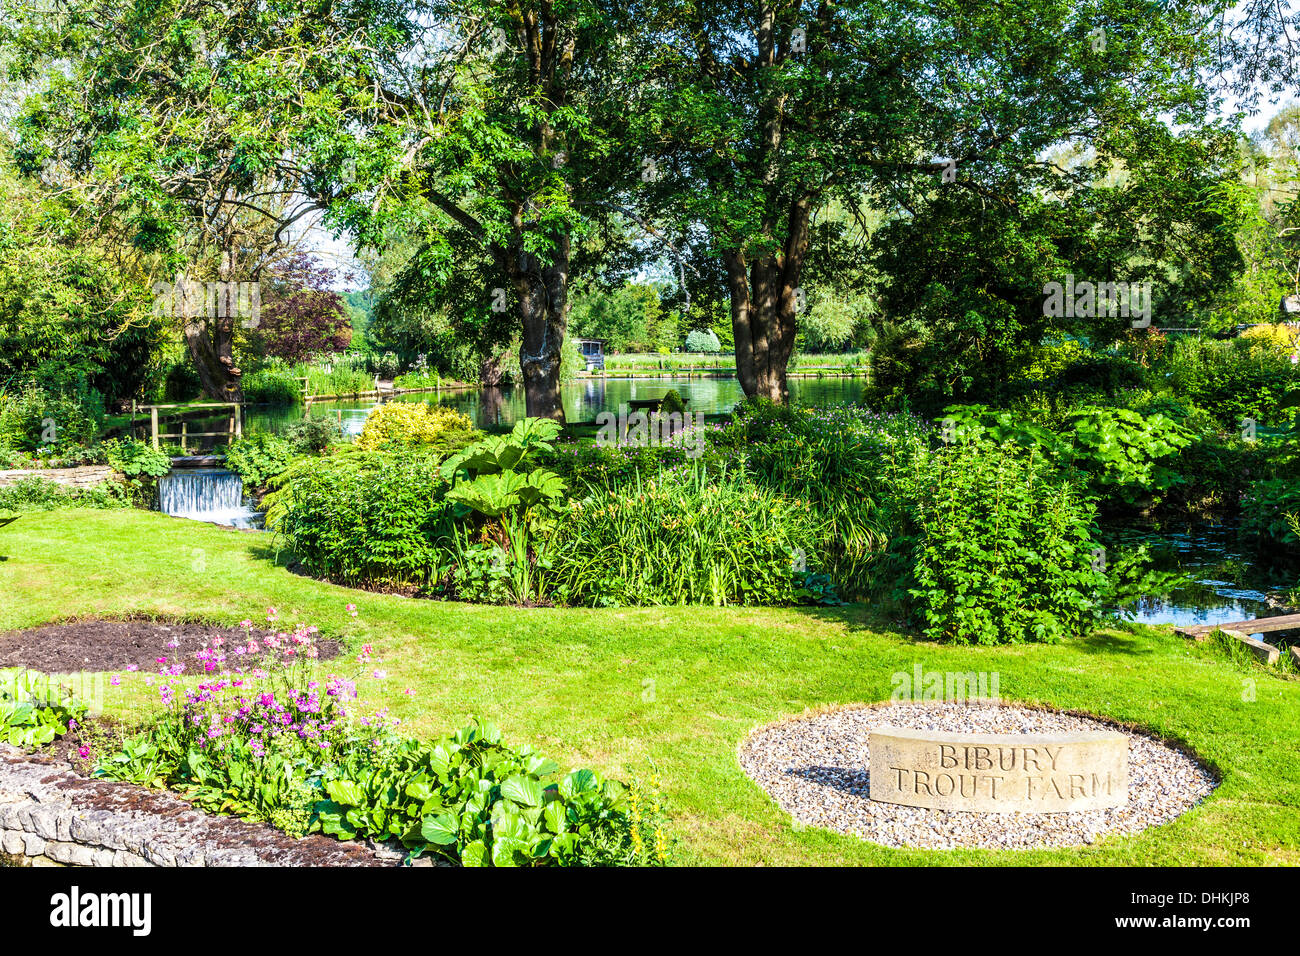 Il grazioso giardino paesaggistico dell'allevamento di trote nel villaggio Costwold di Bibury in Coln Valley. Foto Stock